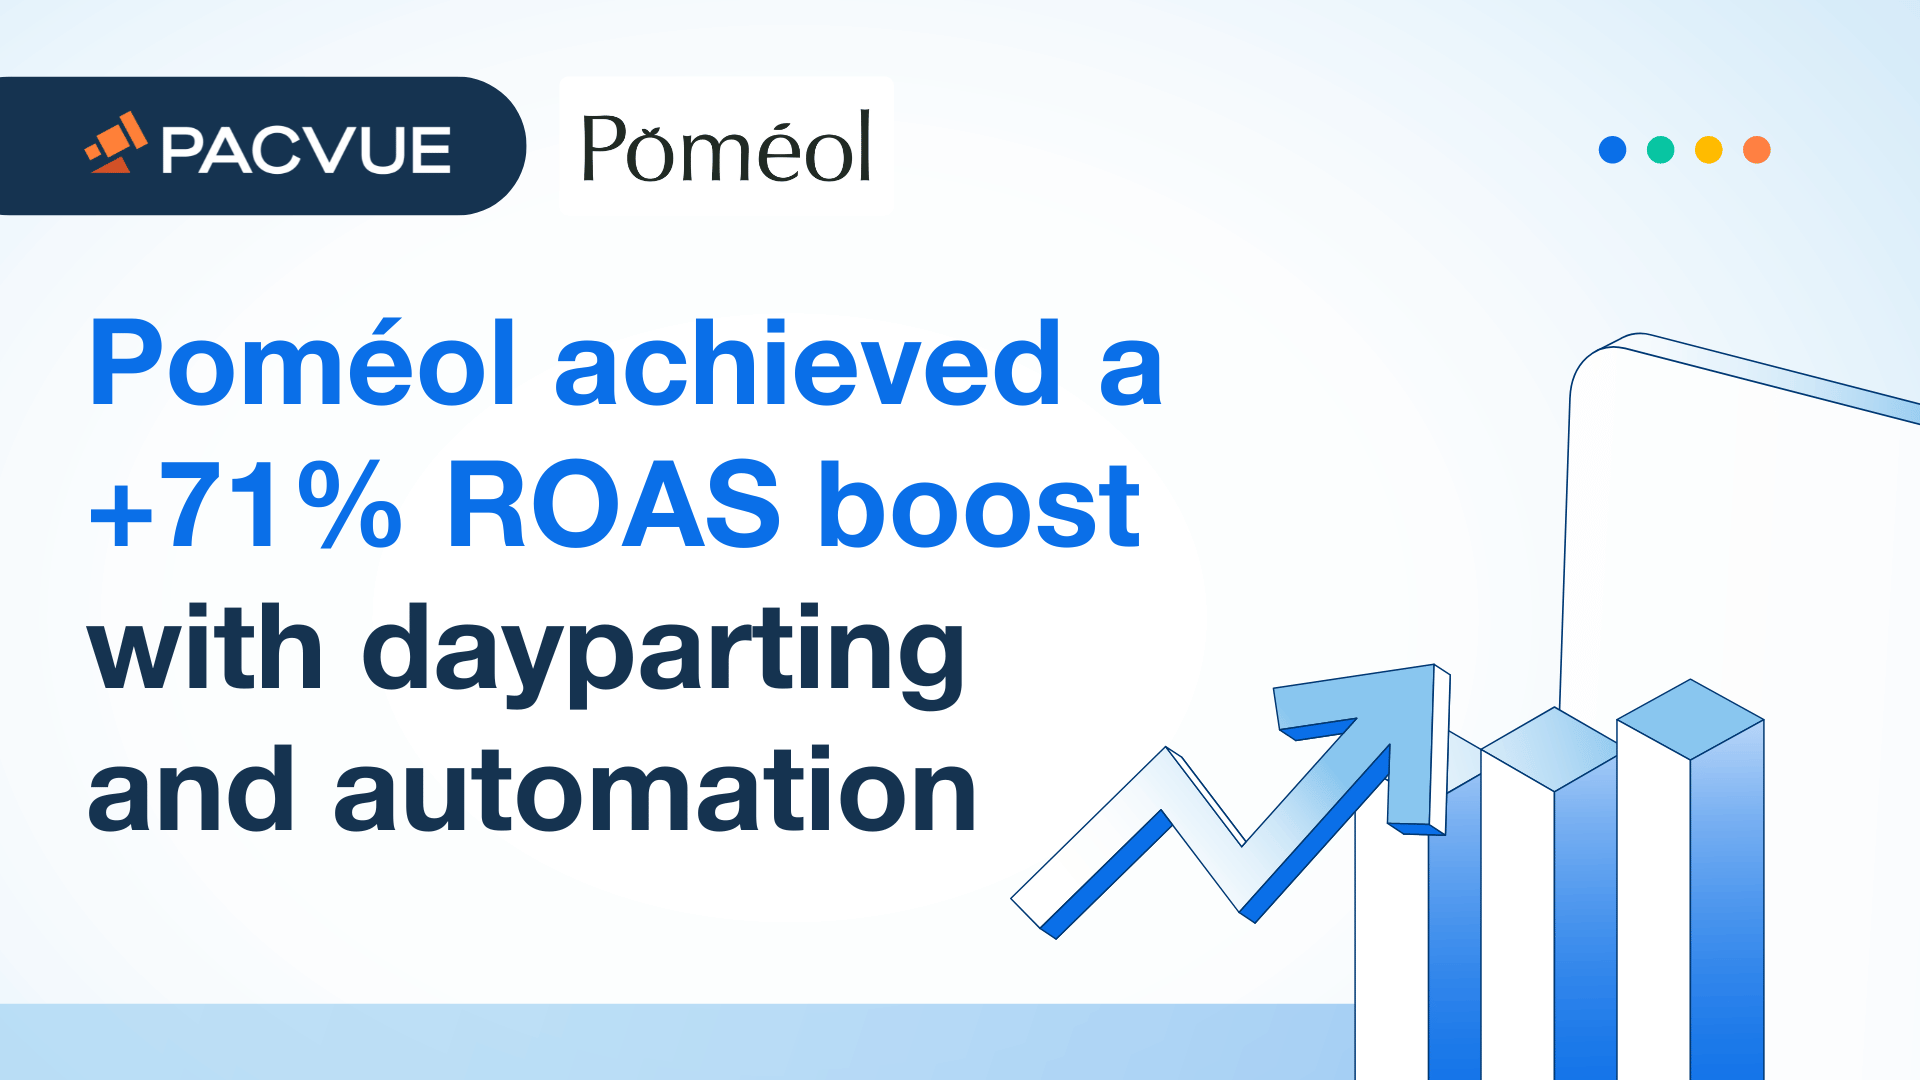 ポメオールはデイパーティングと自動化によってROASを71％向上させた。